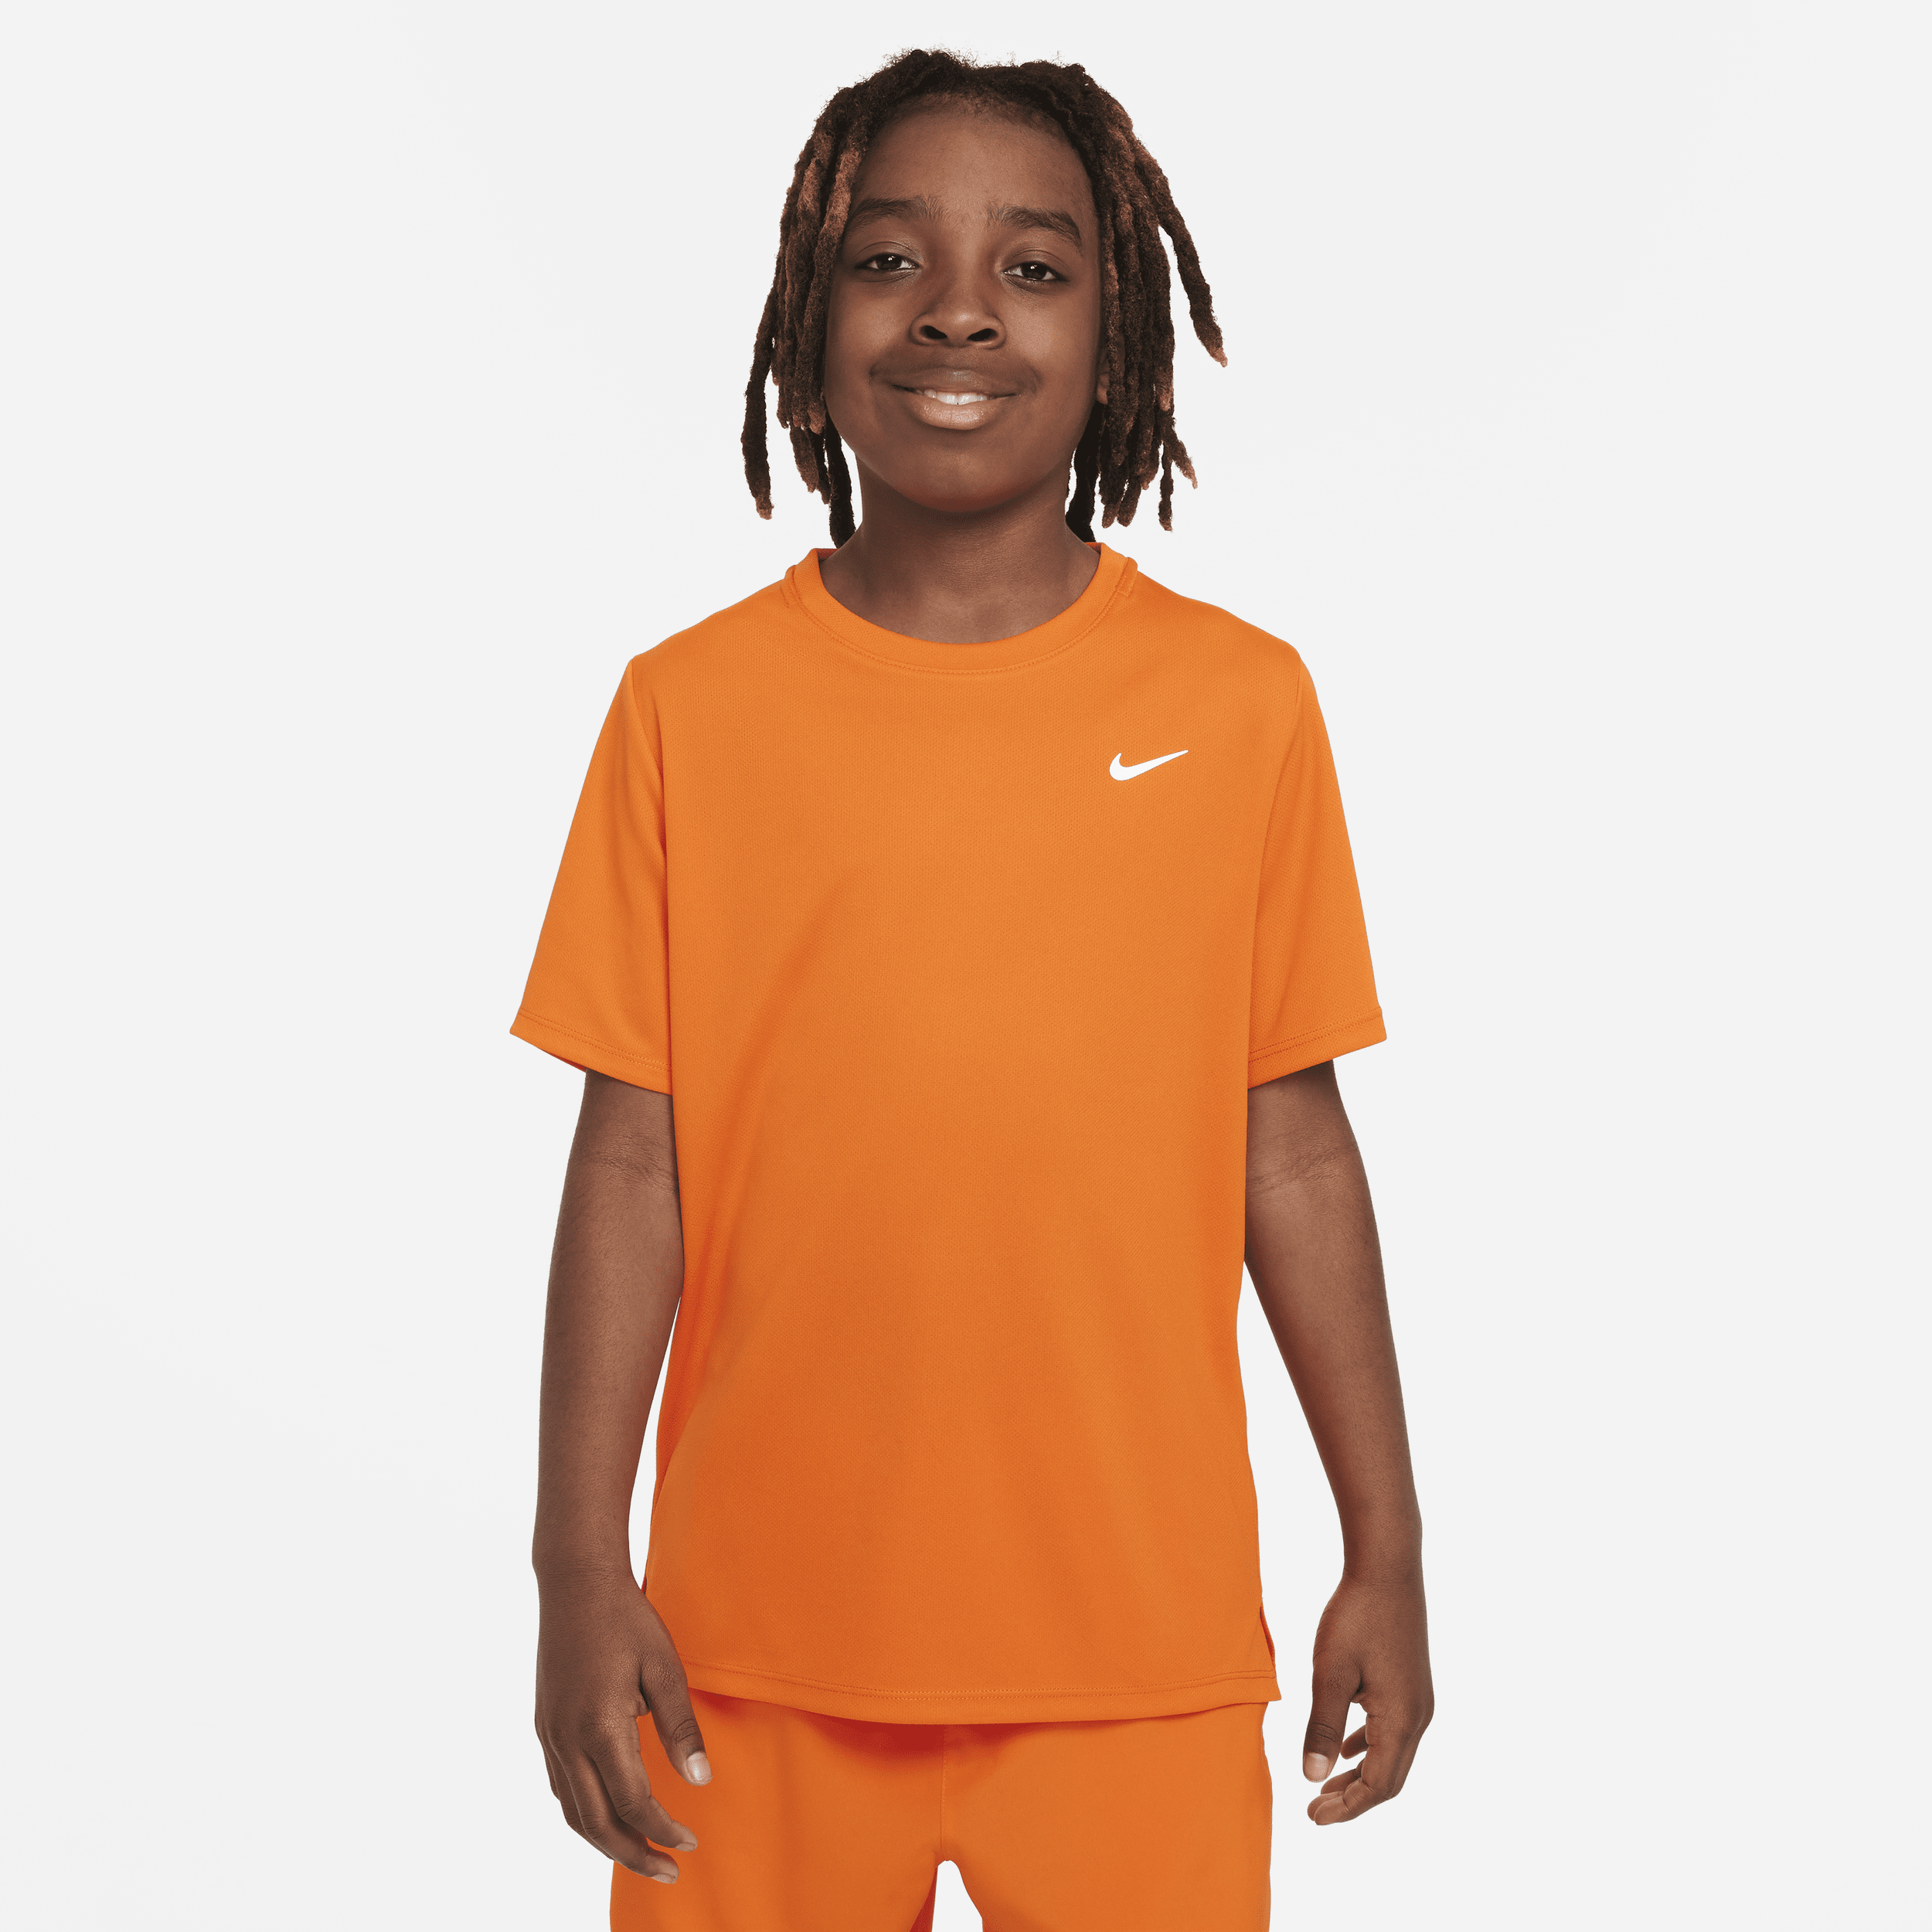 Nike Dri-FIT Miler trainingstop met korte mouwen voor jongens - Oranje